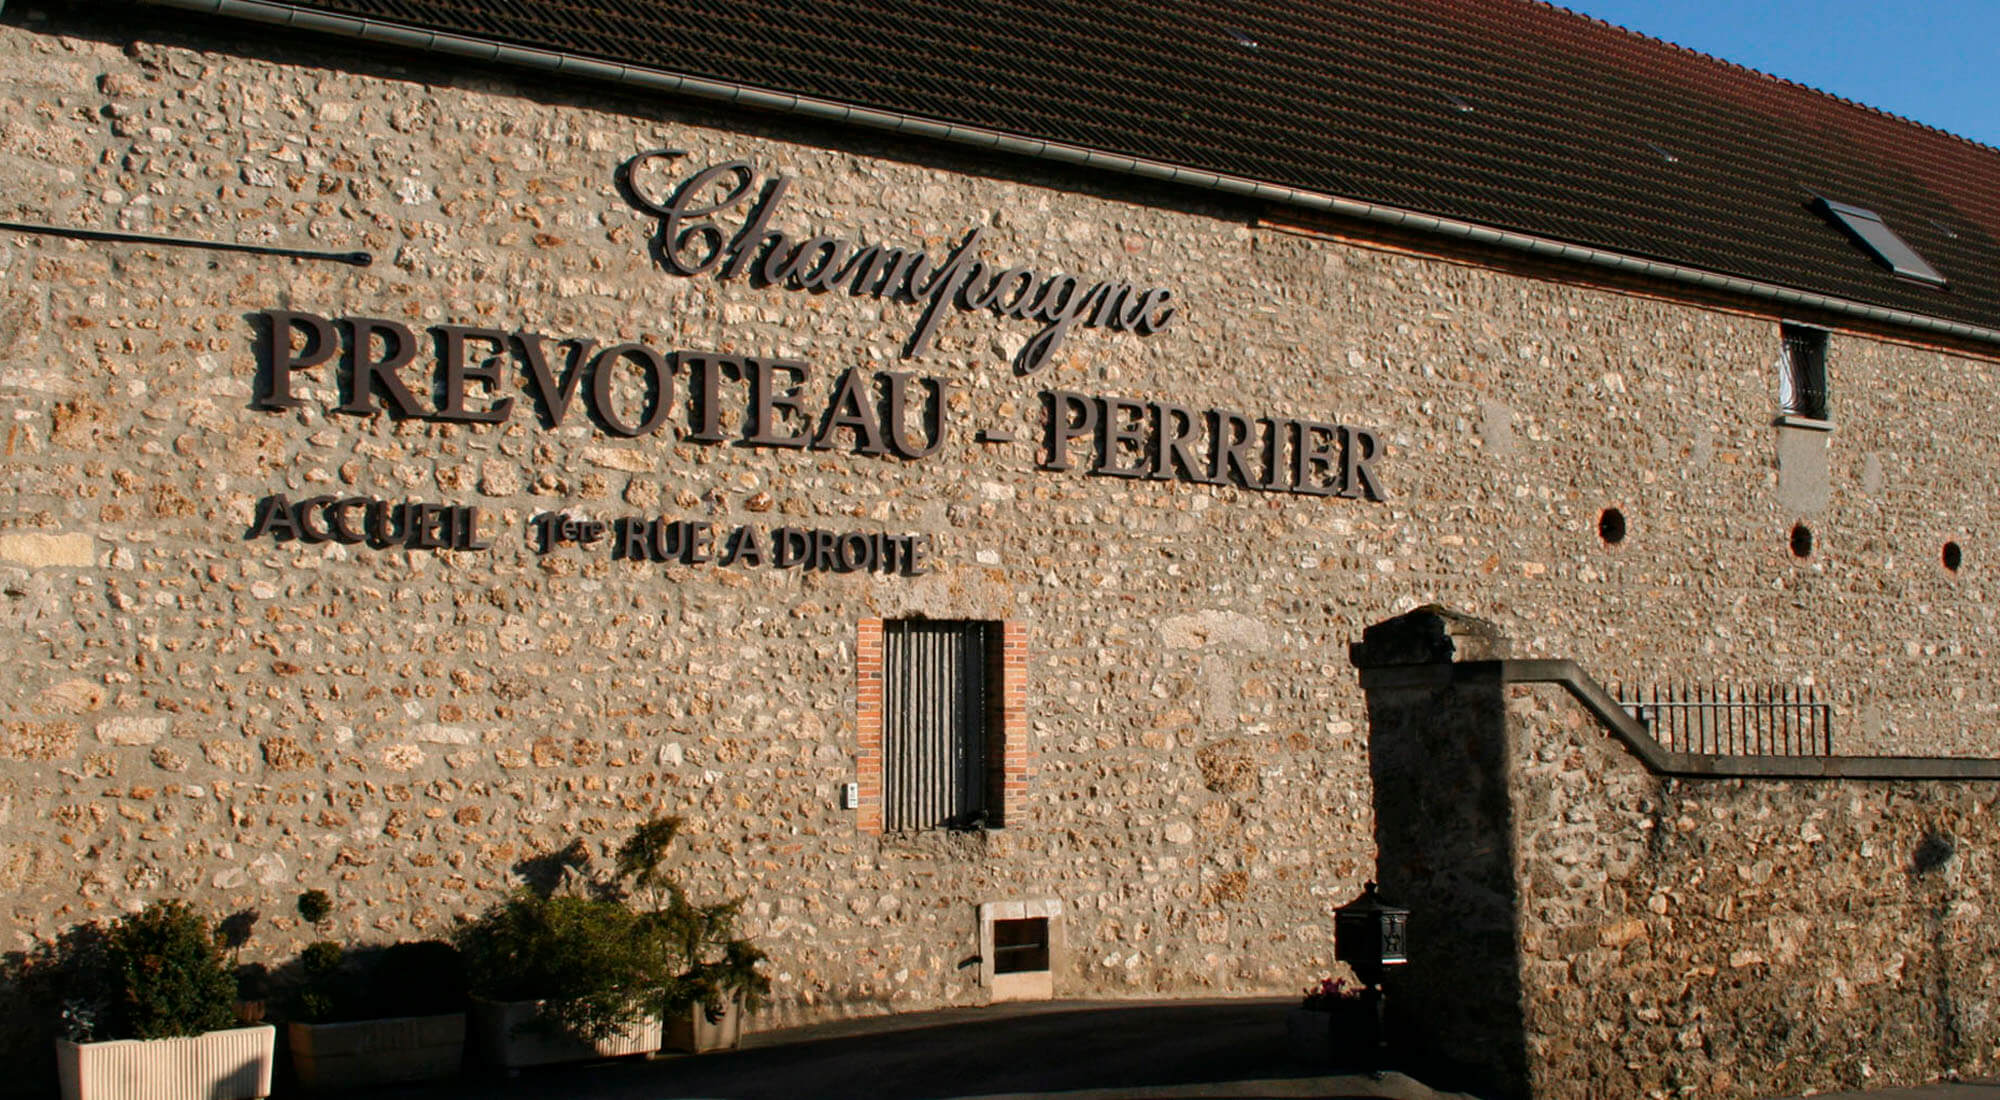 La maison familiale Prévoteau Perrier est situé à Damery près d'Epernay